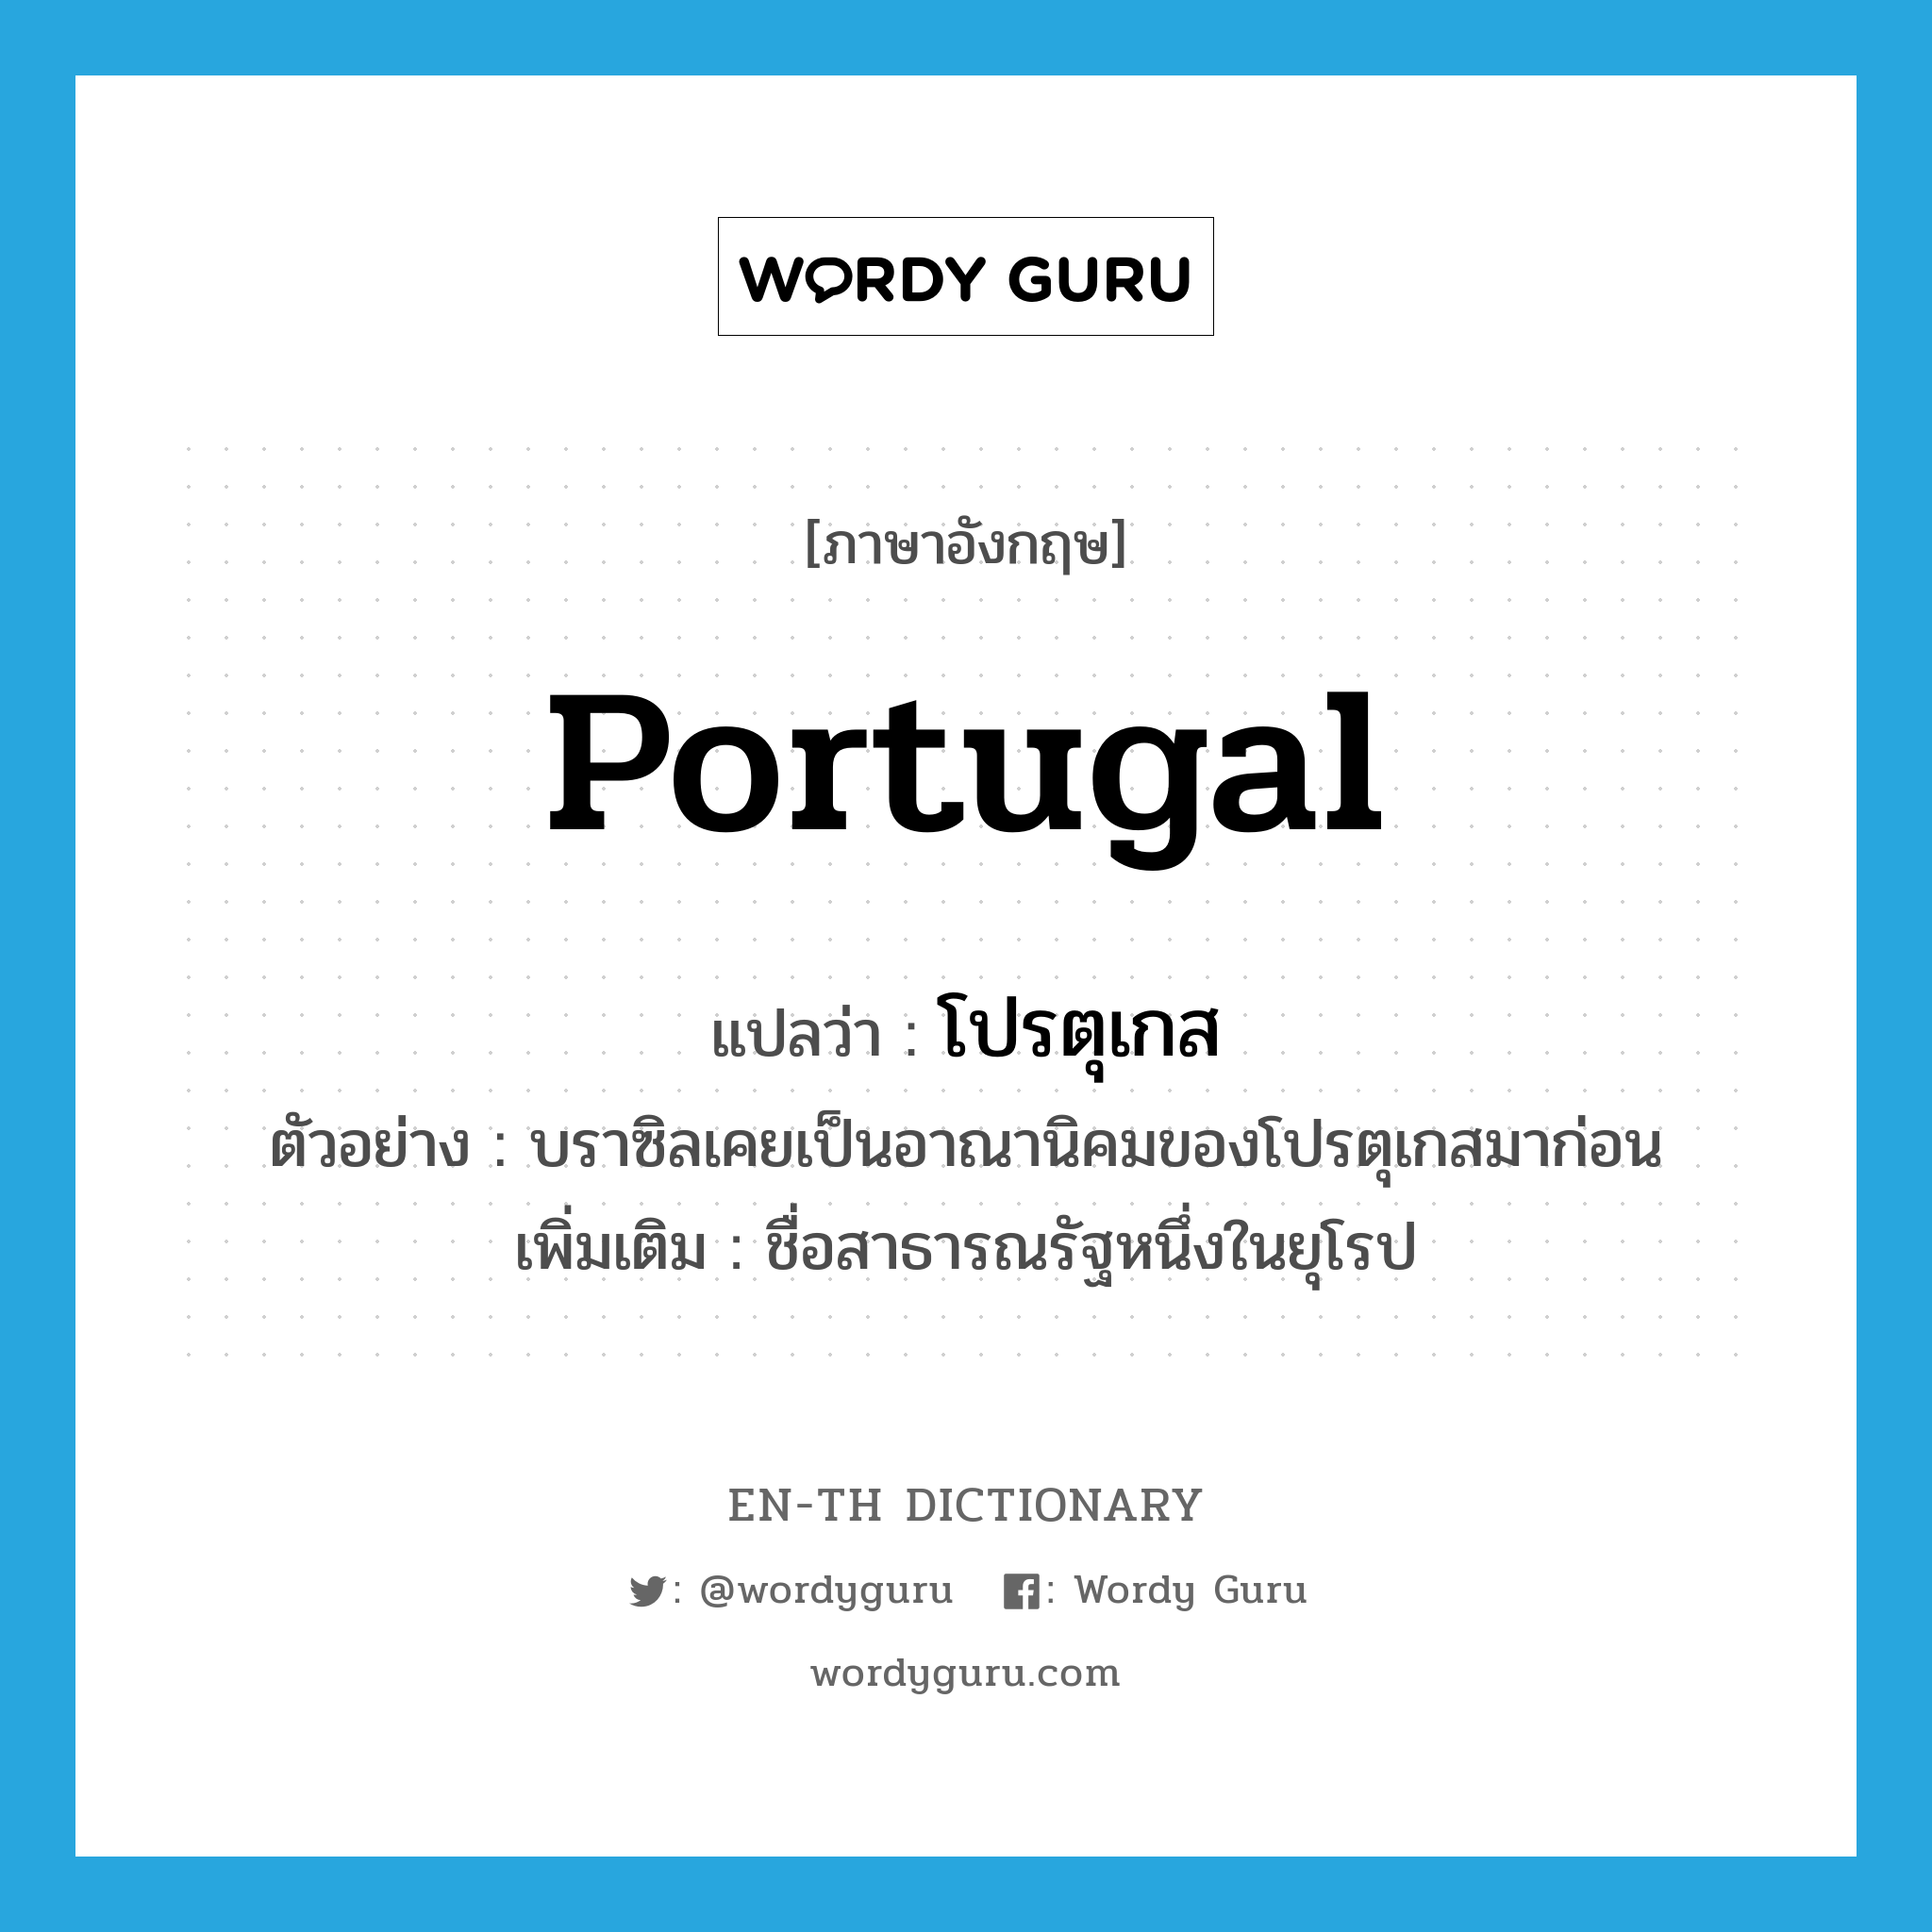 Portugal แปลว่า?, คำศัพท์ภาษาอังกฤษ Portugal แปลว่า โปรตุเกส ประเภท N ตัวอย่าง บราซิลเคยเป็นอาณานิคมของโปรตุเกสมาก่อน เพิ่มเติม ชื่อสาธารณรัฐหนึ่งในยุโรป หมวด N